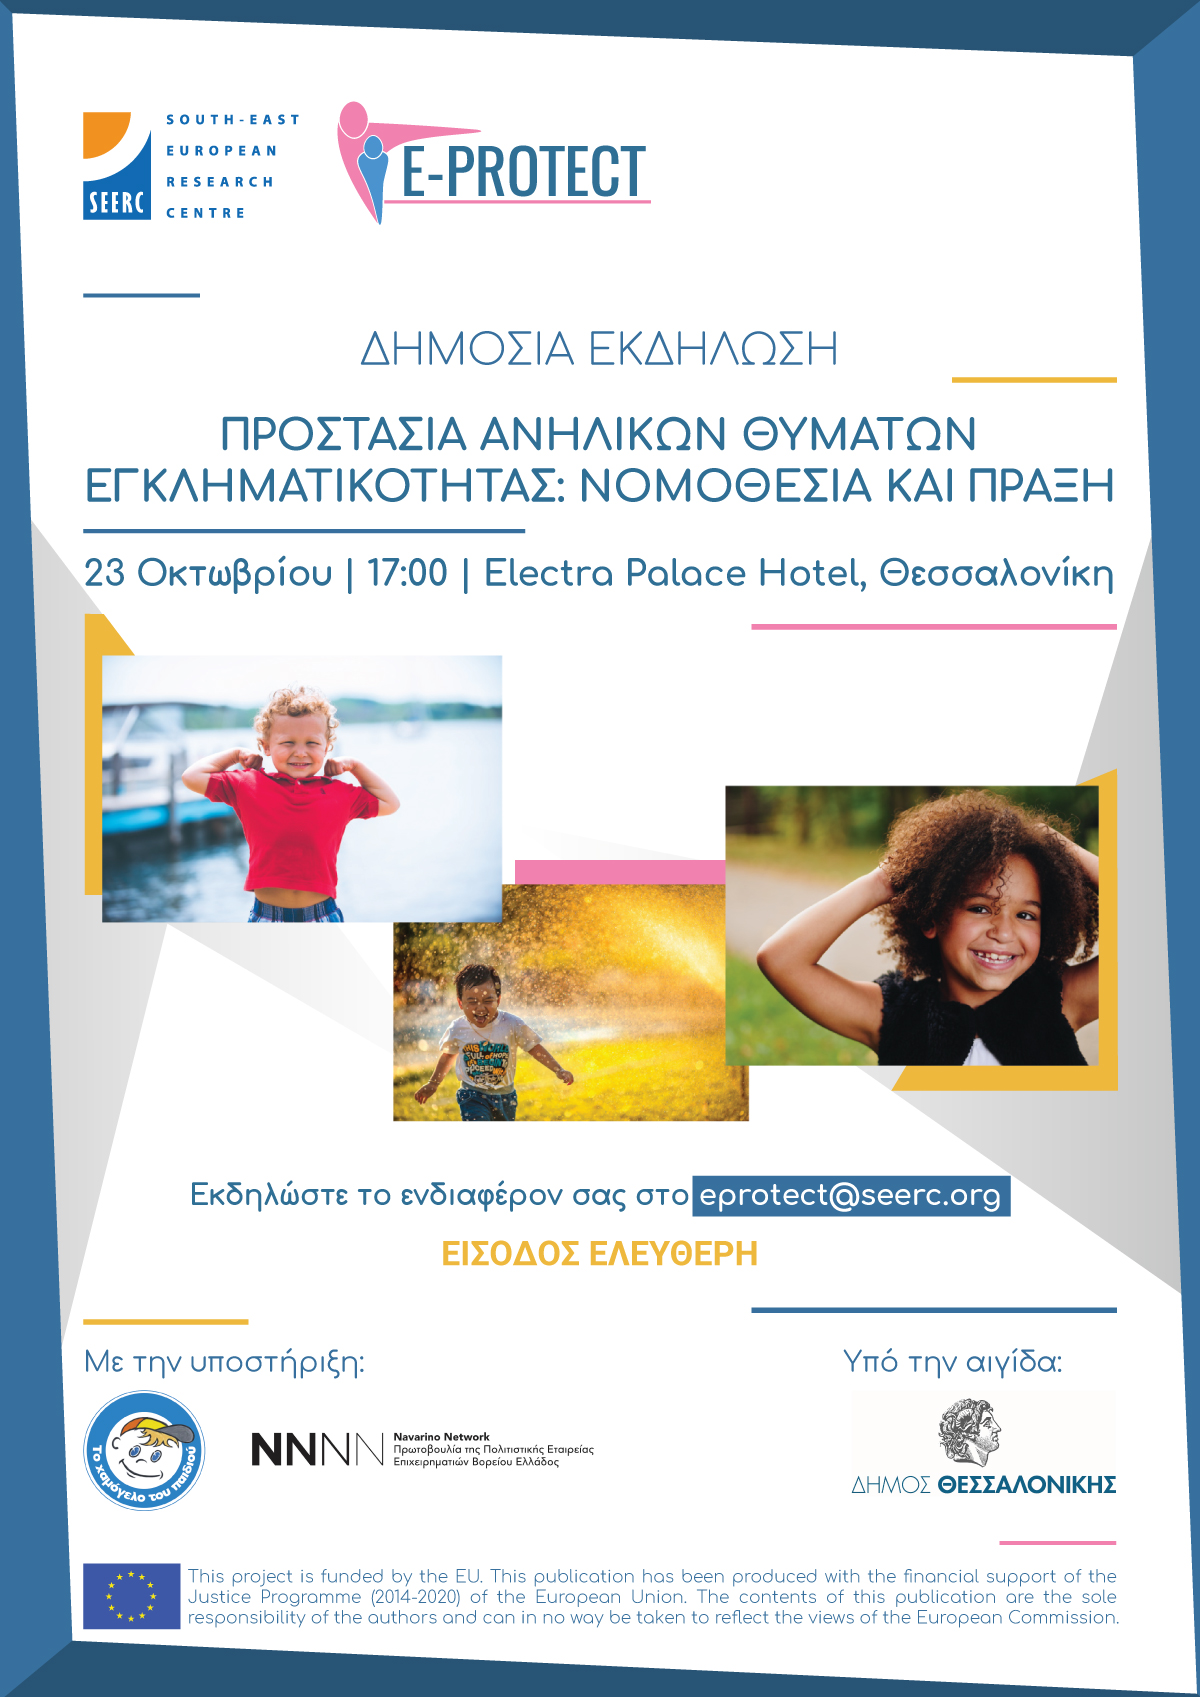 Ε-PROTECT event on 'Protecting Child-victims of Crime' by SEERC